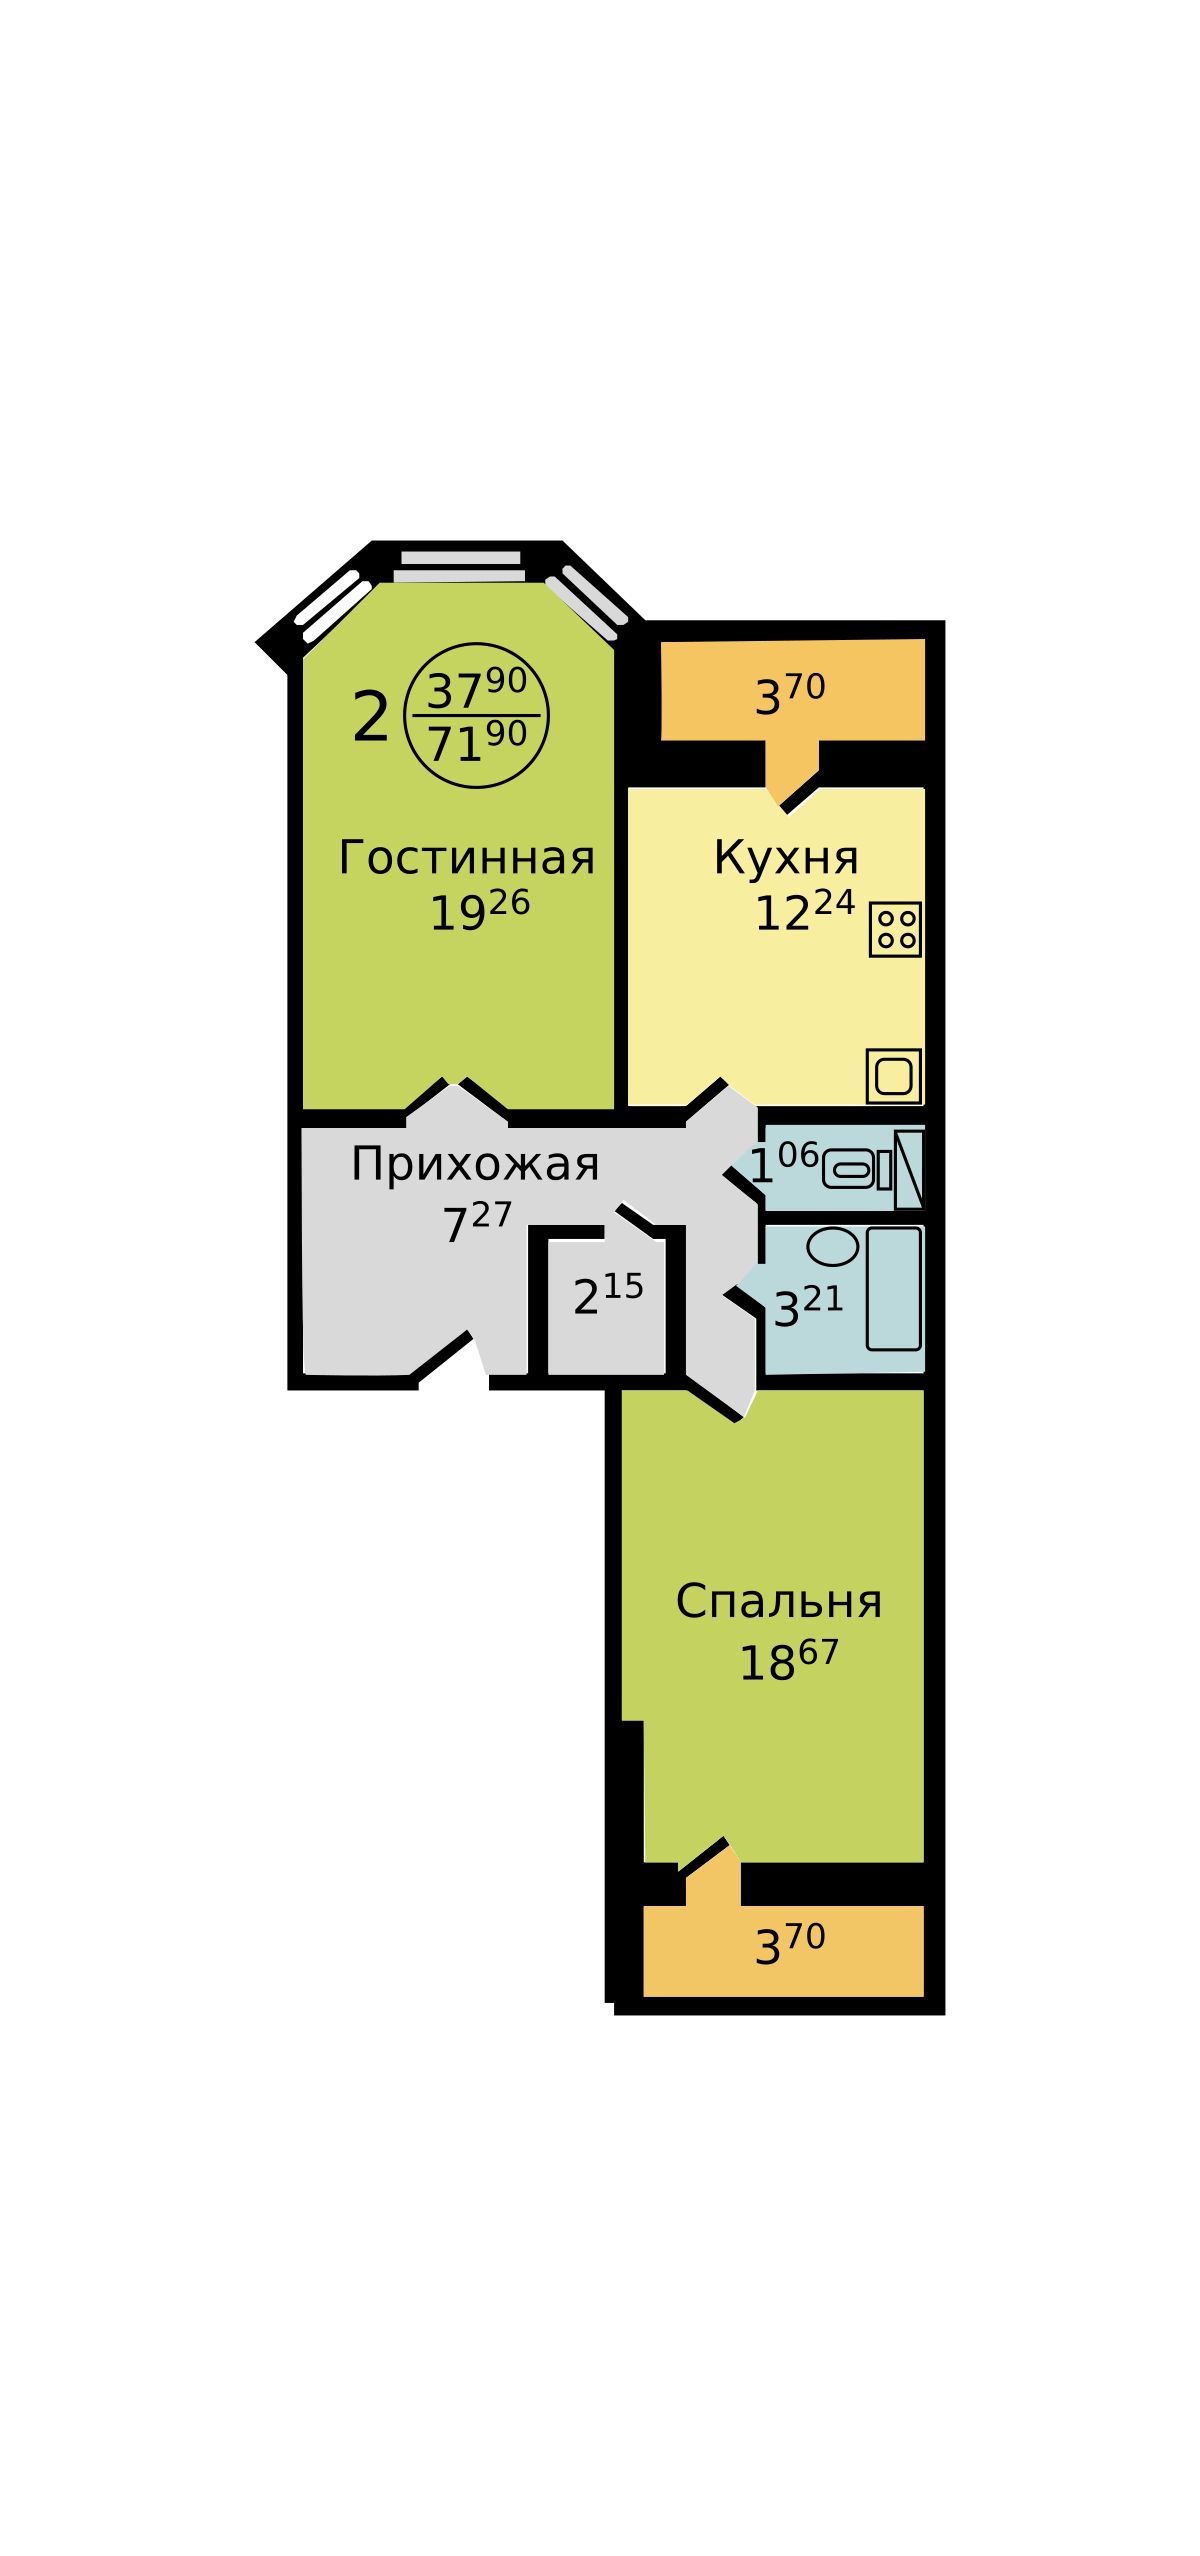 Планировка 2-х комнатной квартиры серии «НС-1» в векторном формате svg